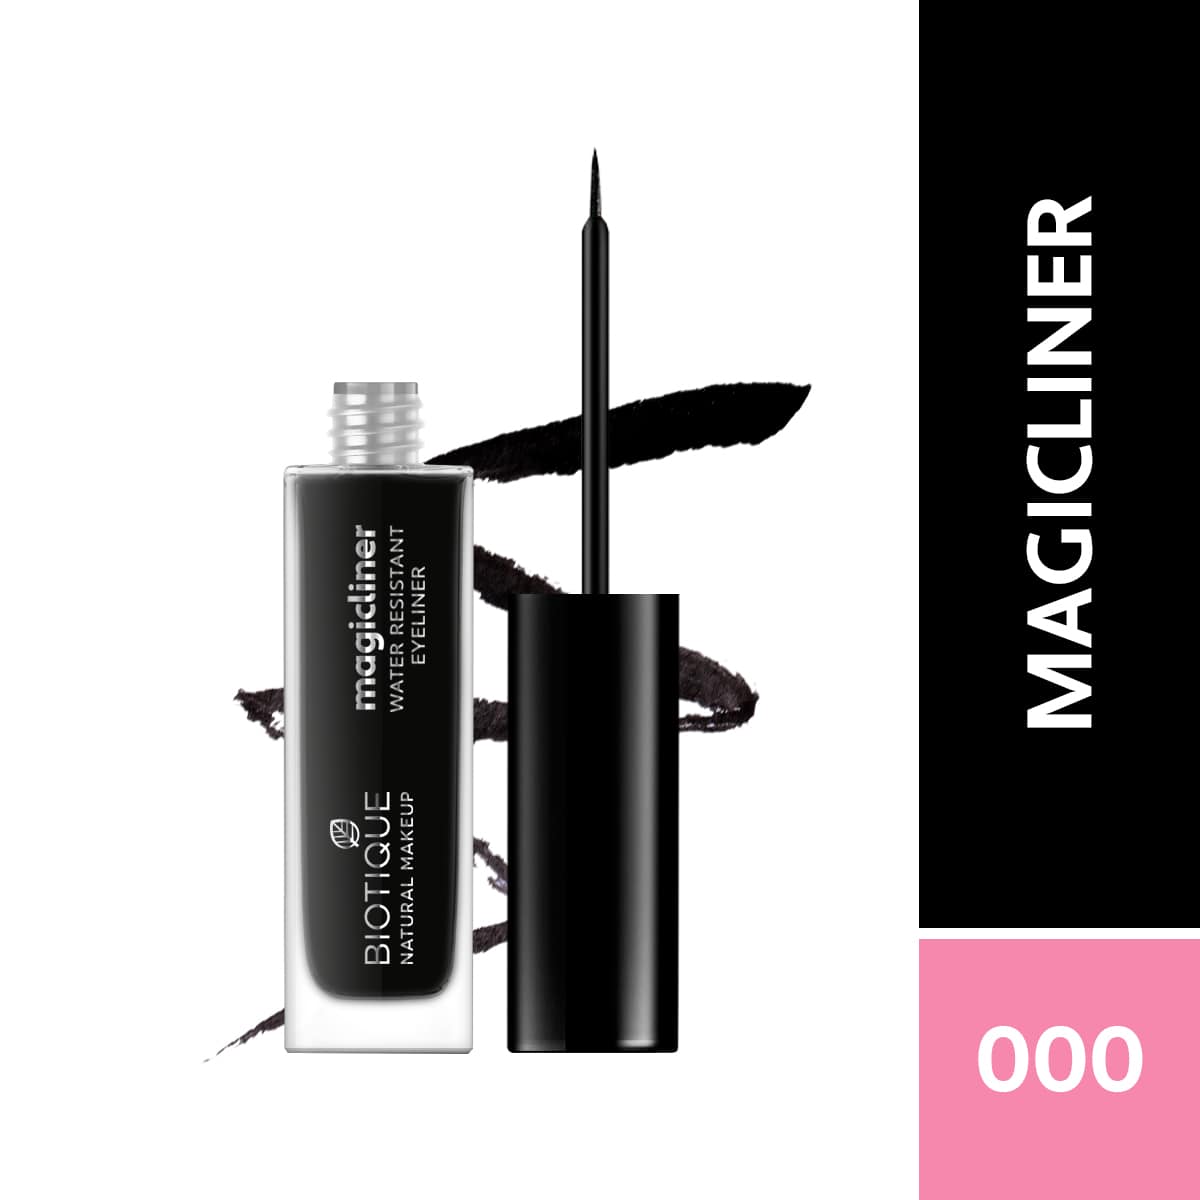 Biotique Natural Makeup Magicliner, Midnight Black, 9ml